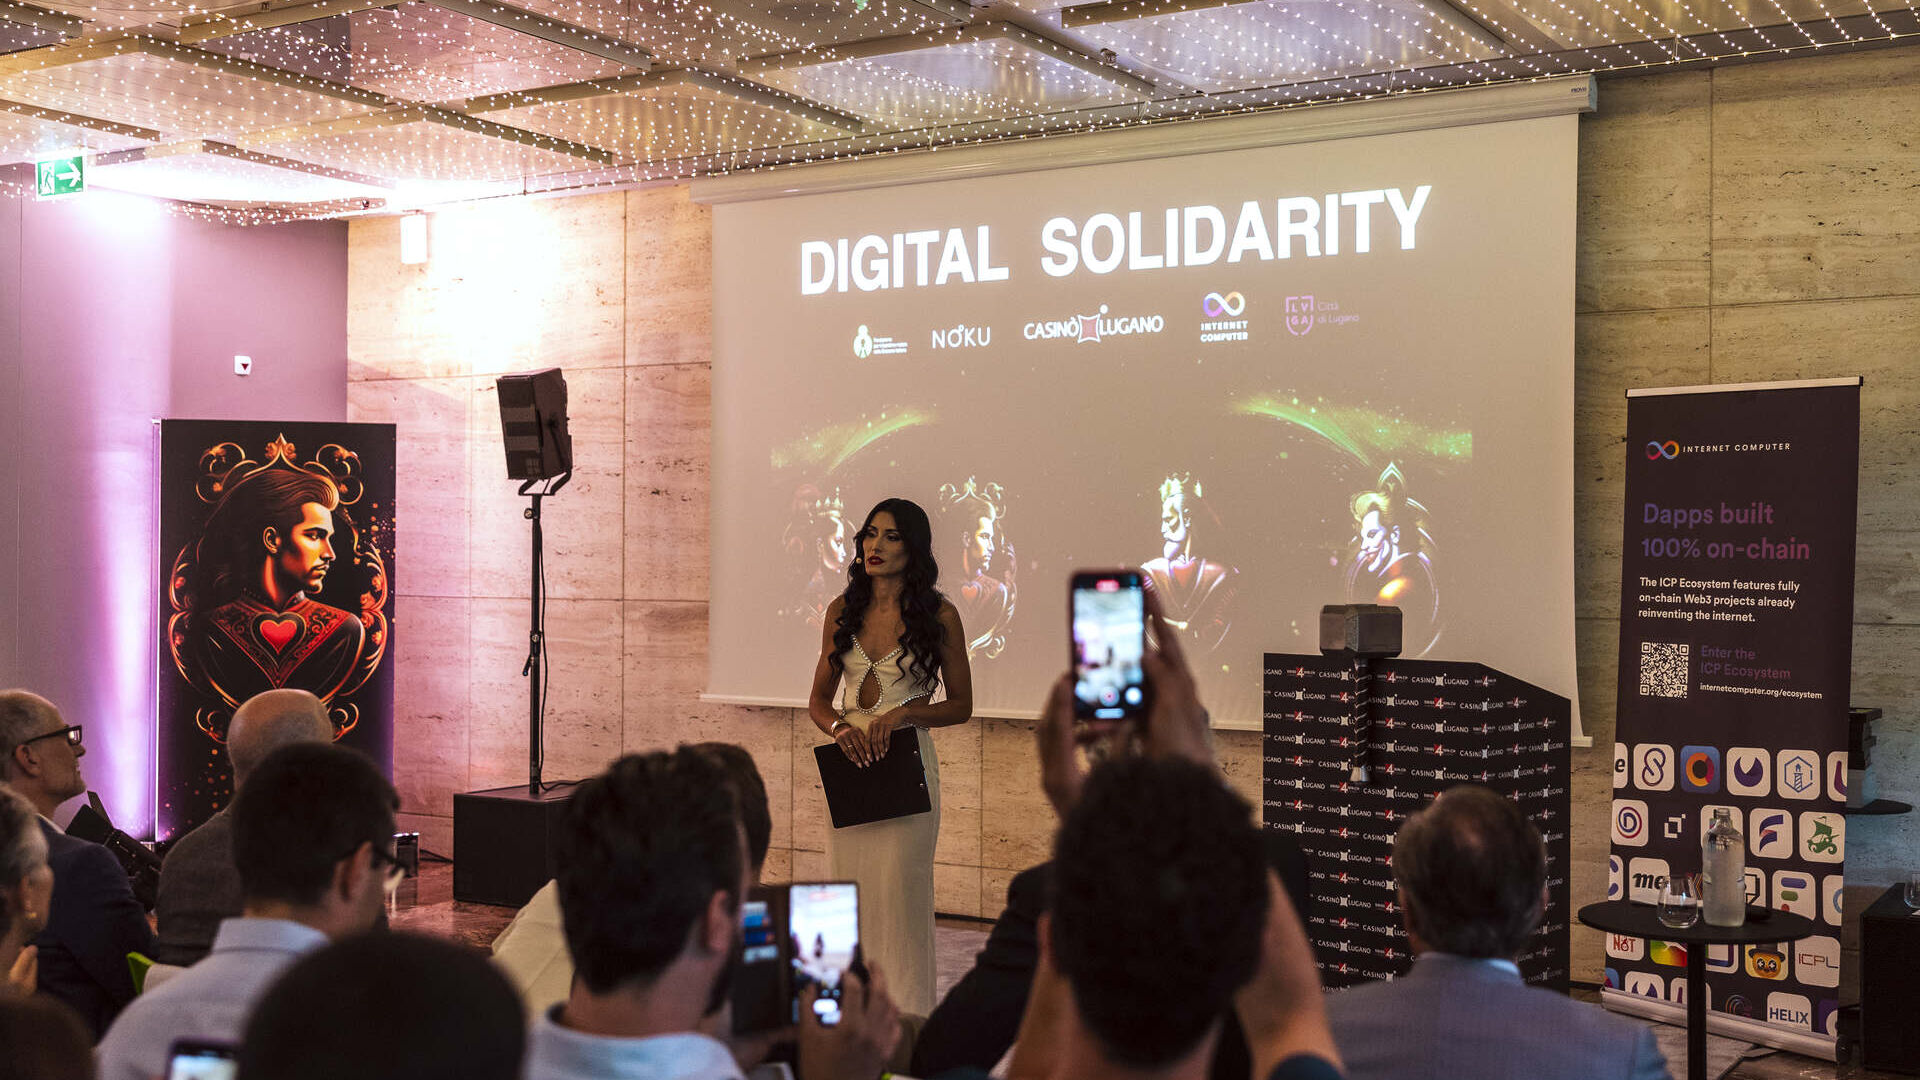 Digital Solidarity: ຕອນແລງທີ່ອຸທິດຕົນເພື່ອການເກັບກໍາ NFT ຂອງ Lugano Casino ໃນສະວິດເຊີແລນ